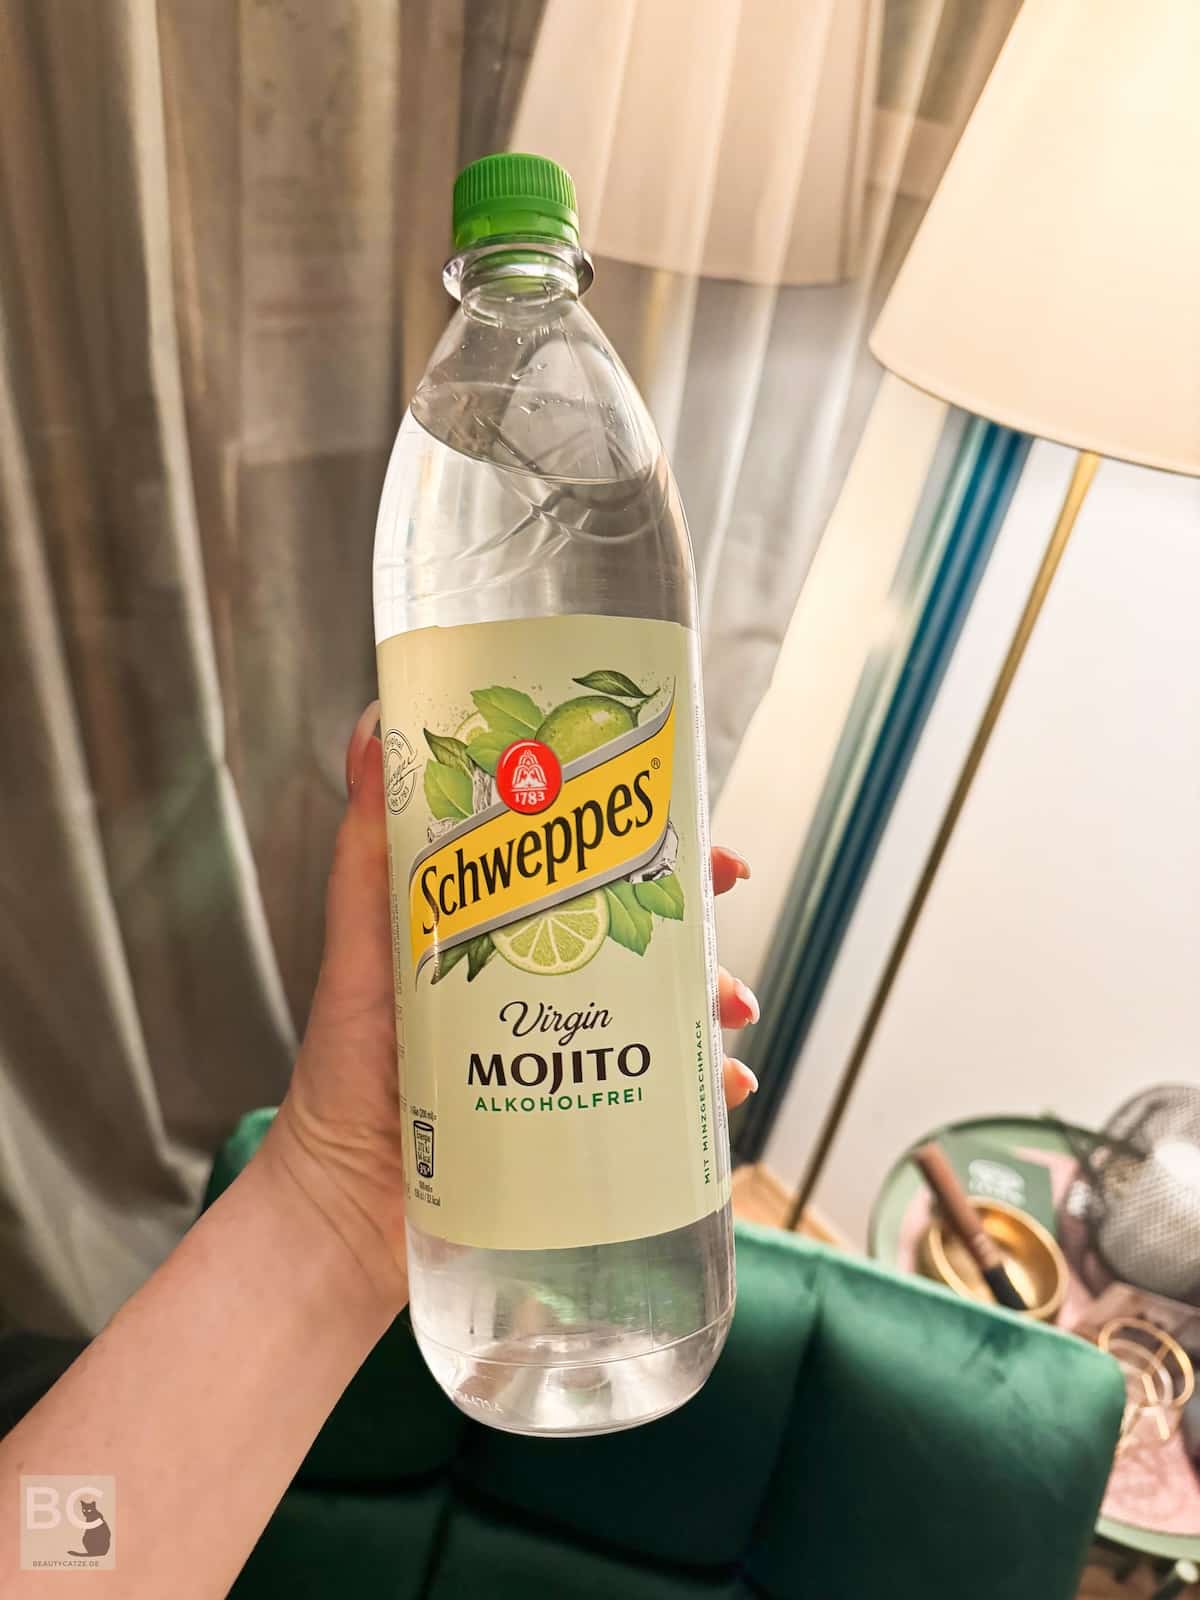 Schweppes Virgin Mojito alkoholfrei Limo Erfahrungen Minze Limette Sprite